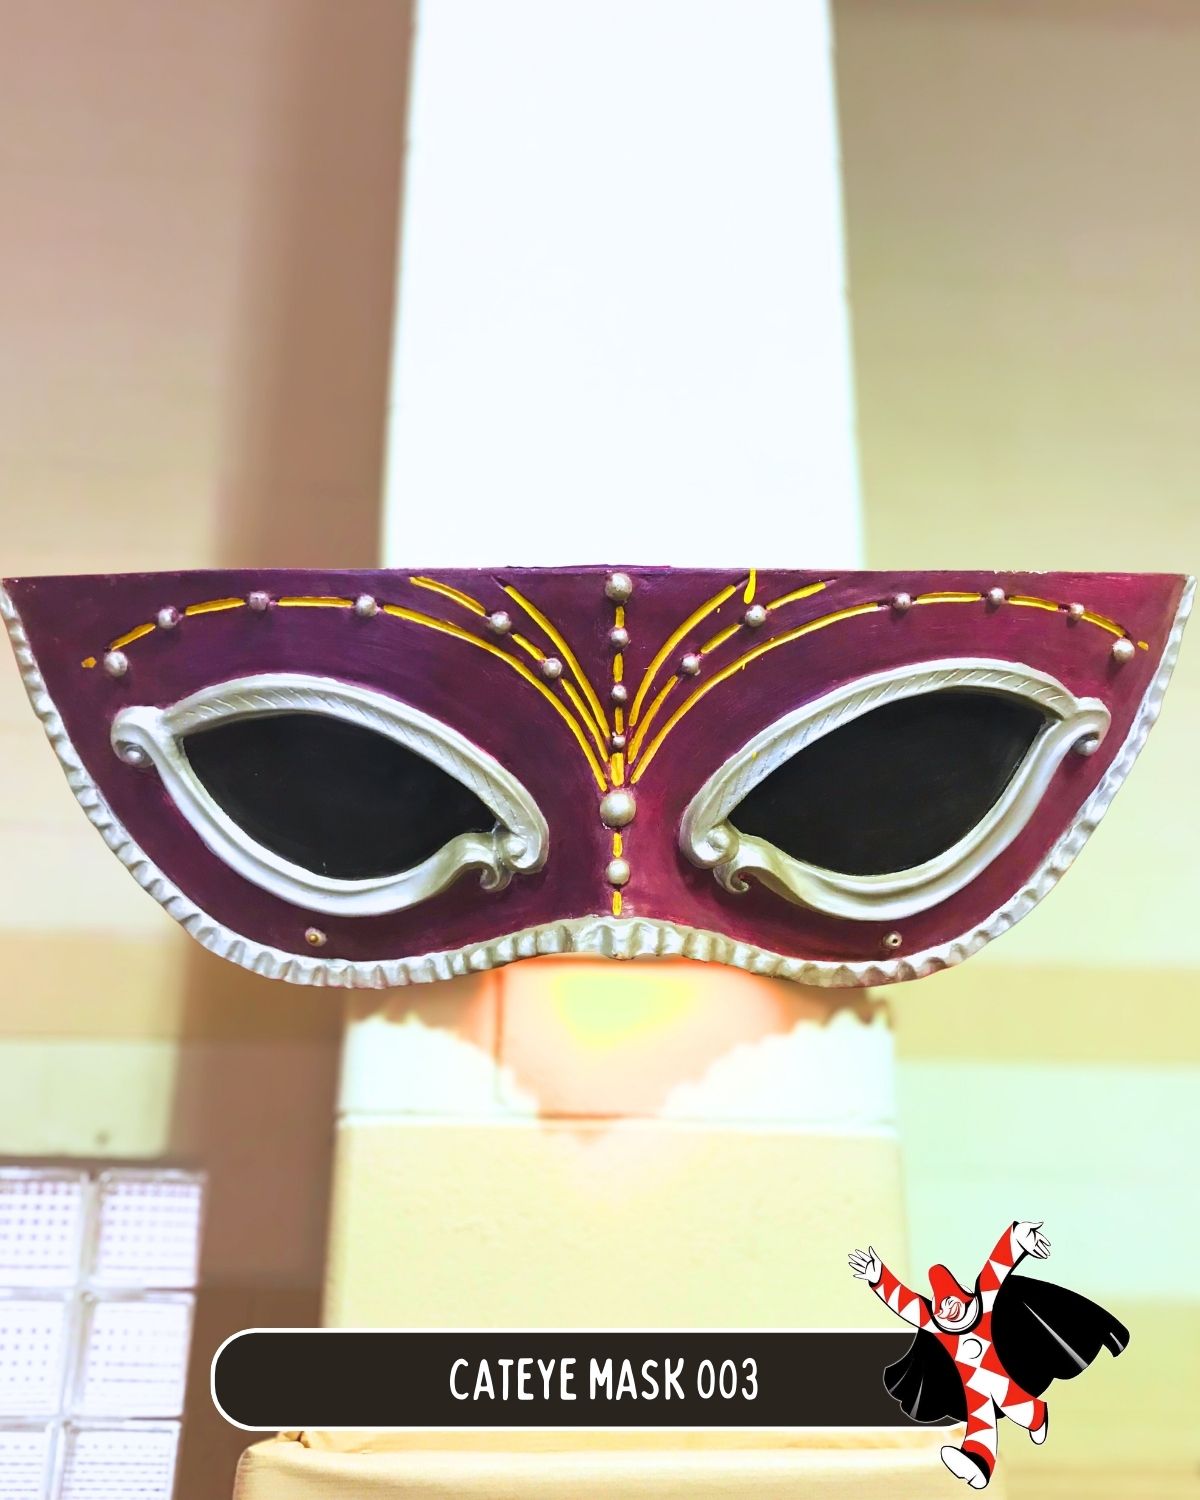 Cateye Mask 003